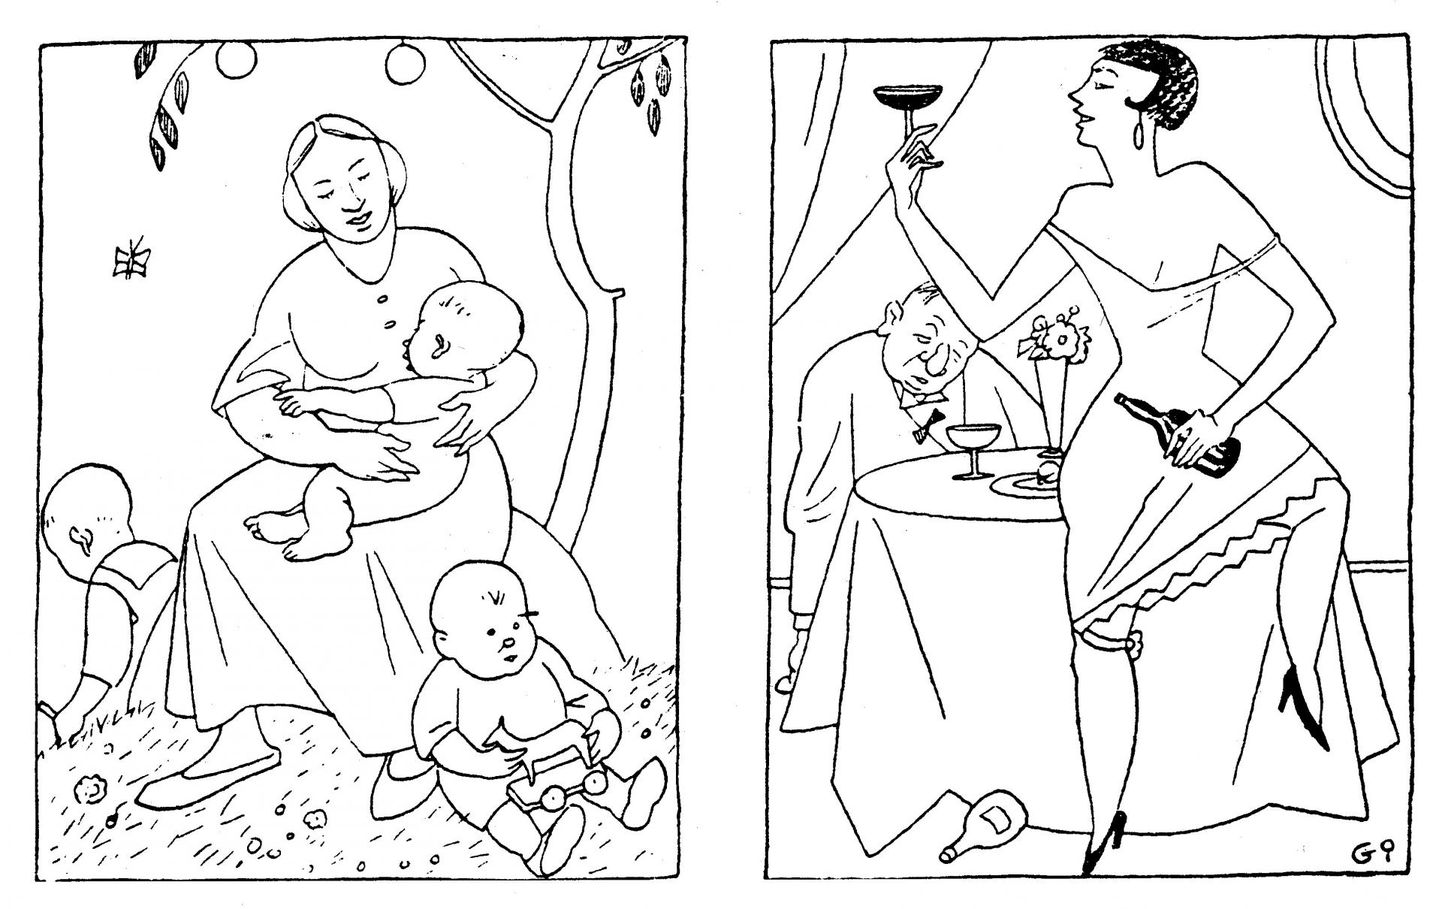 «Evolutsioon. Enne oli naine uhke, kui võis olla õnnelik ema. Nüüd on «ajakohane naine» uhke, kui suudab juua mehe laua alla.» Nõnda kõlab karikaturist Gori ehk Vello Agori pilapiltide saatetekst 1930. aastatest.